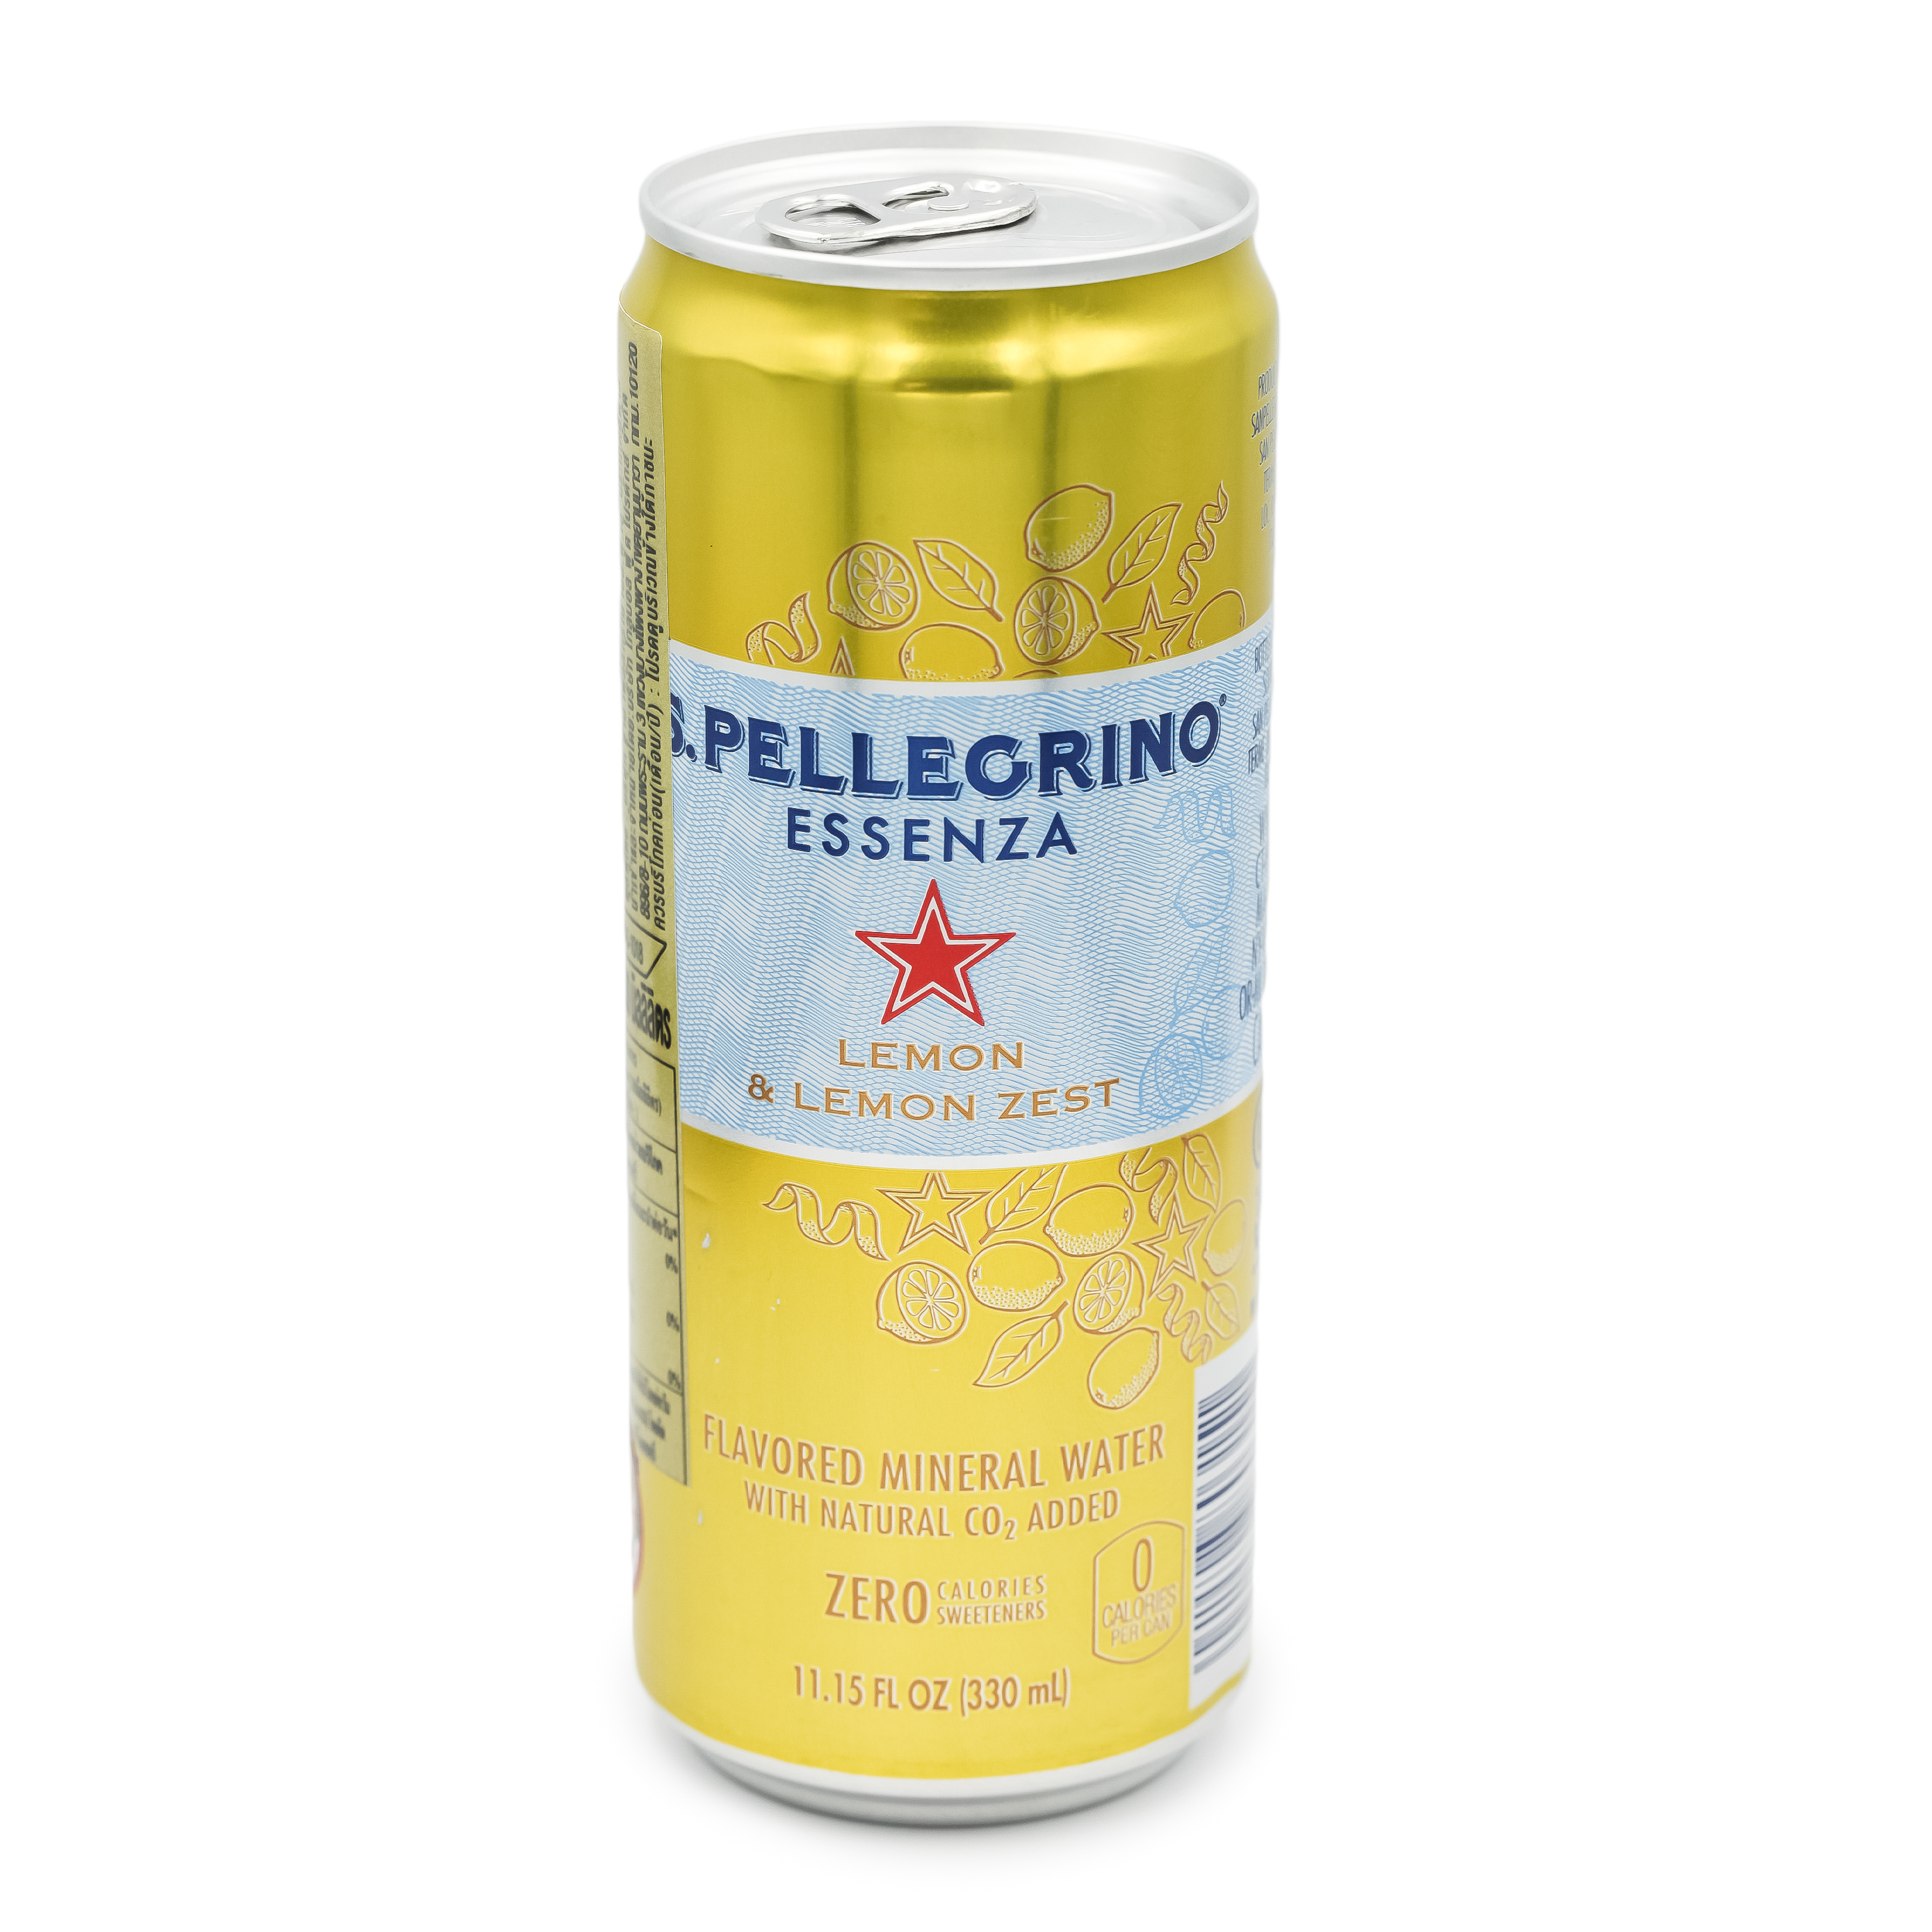 S.Pellegrino Essenza Lemon & Lemon Zest